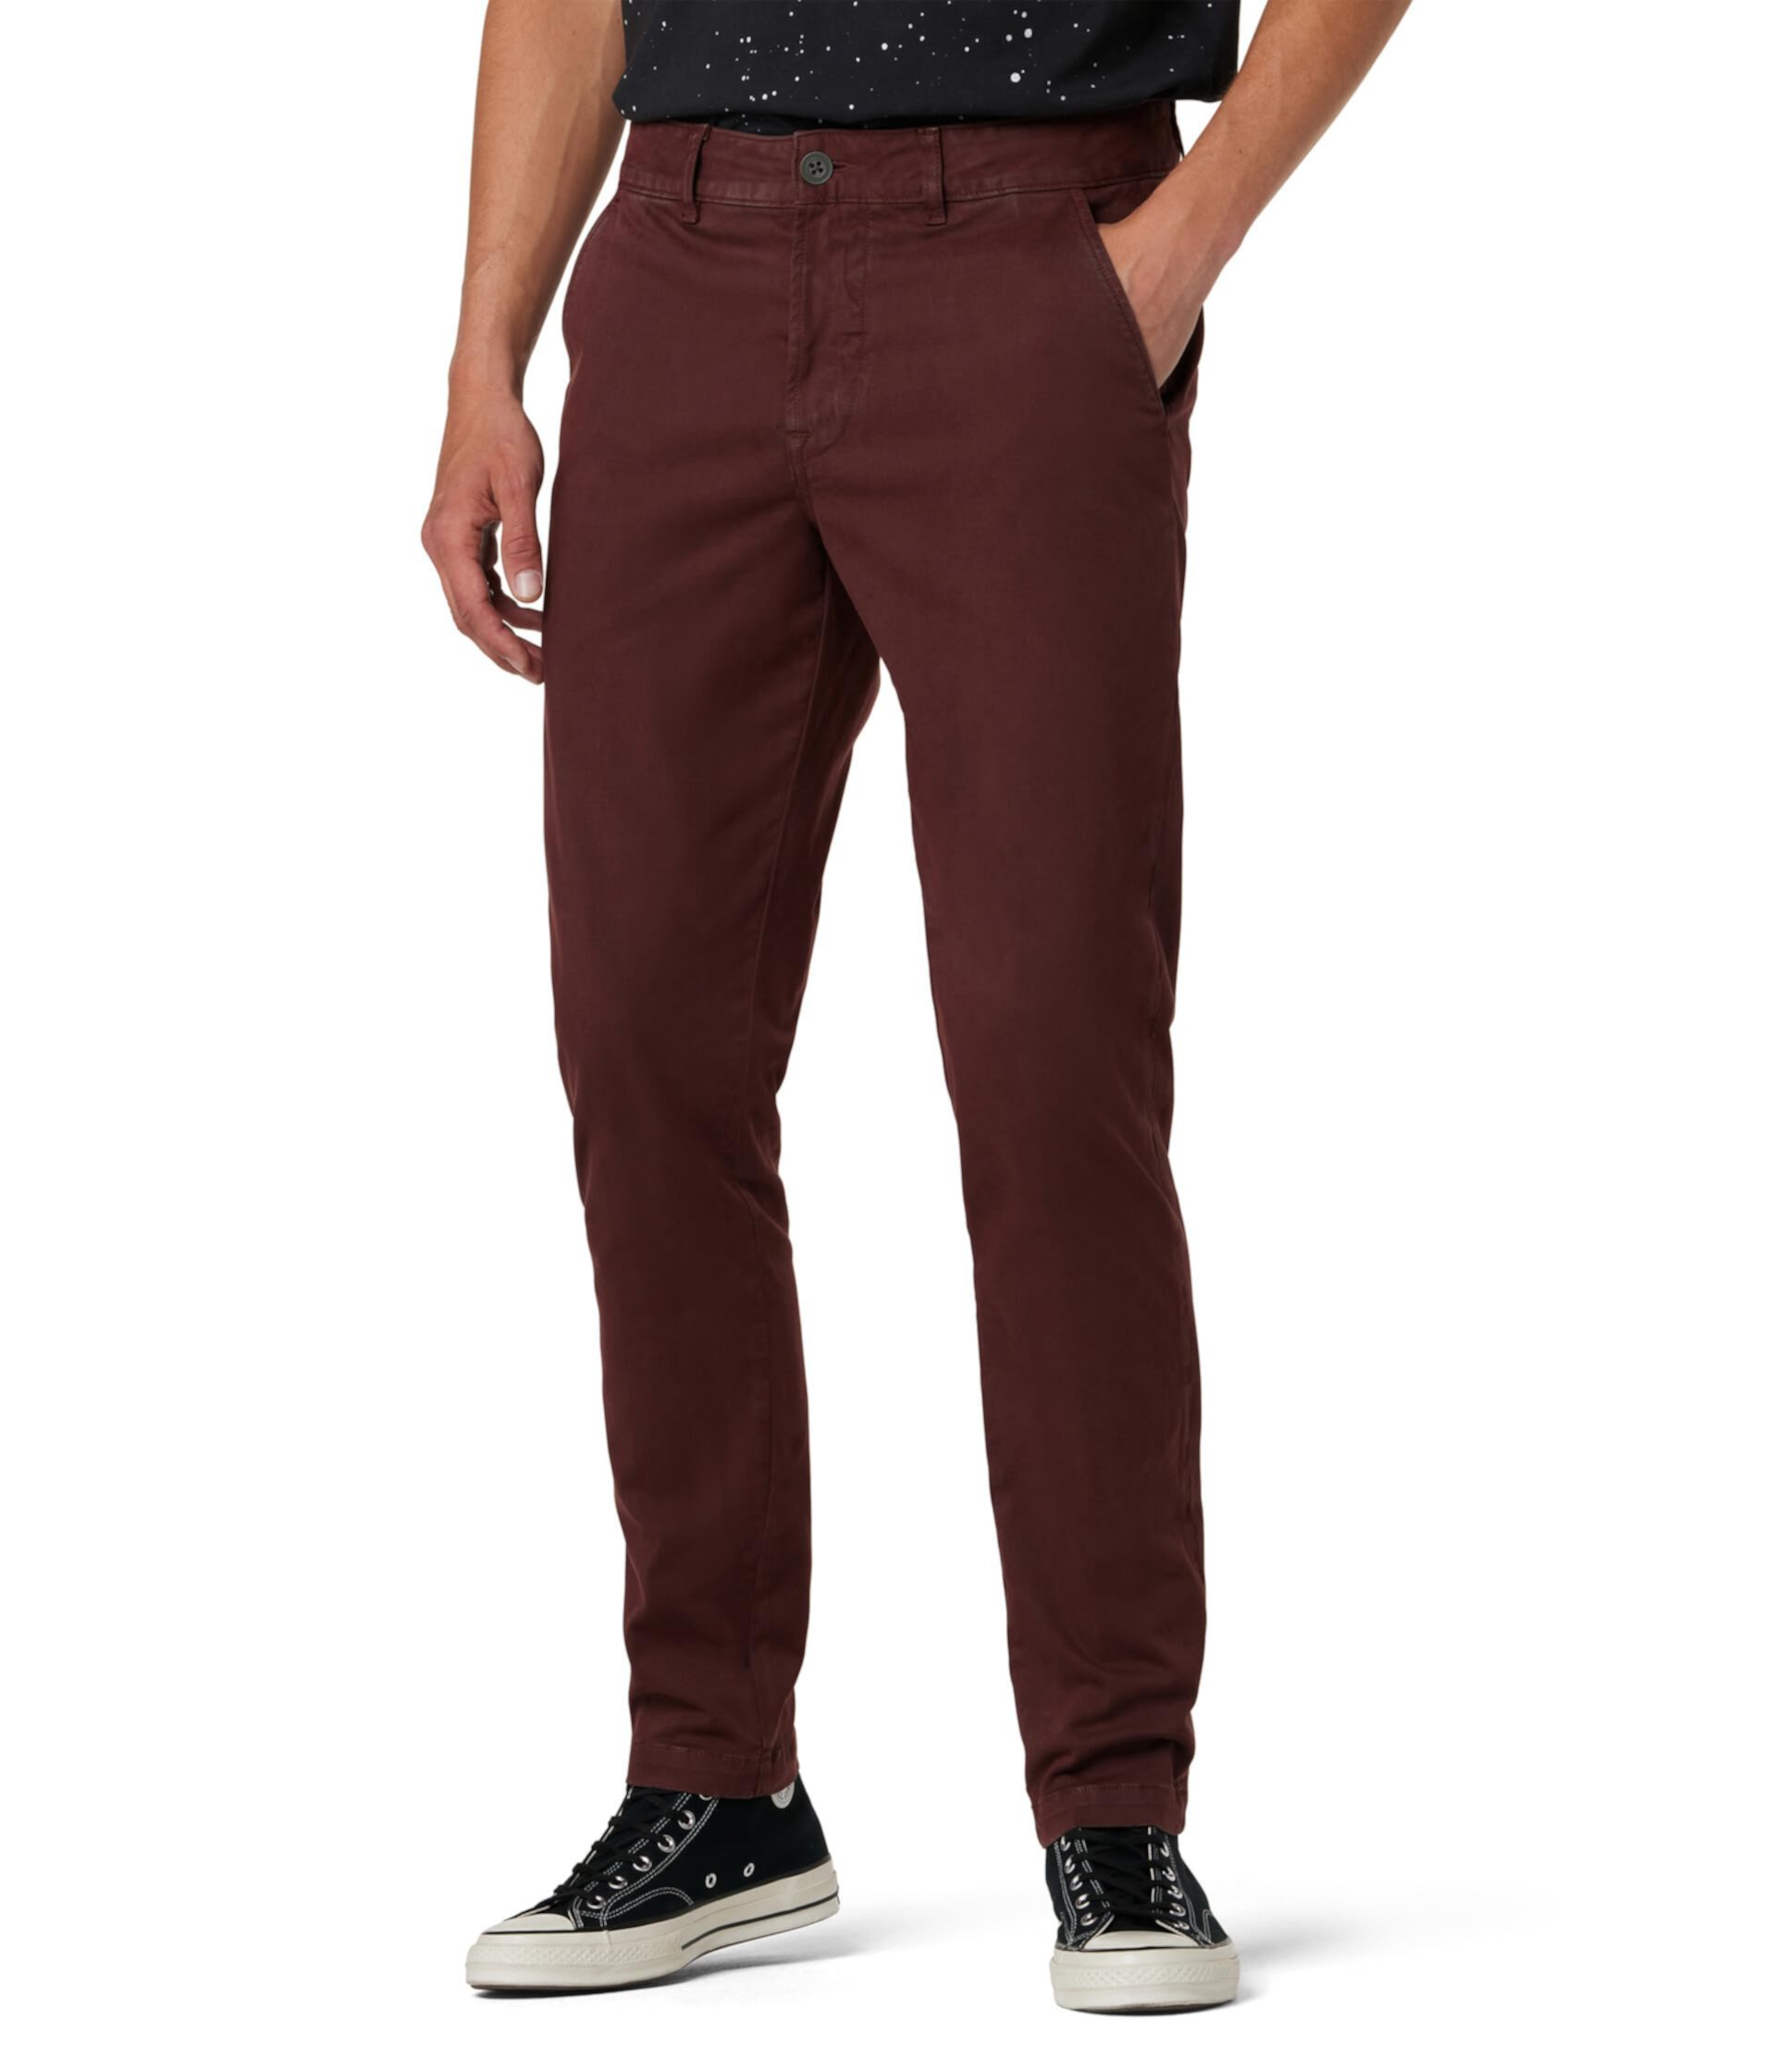 Классические узкие прямые брюки-чиносы красно-коричневого цвета Hudson Jeans